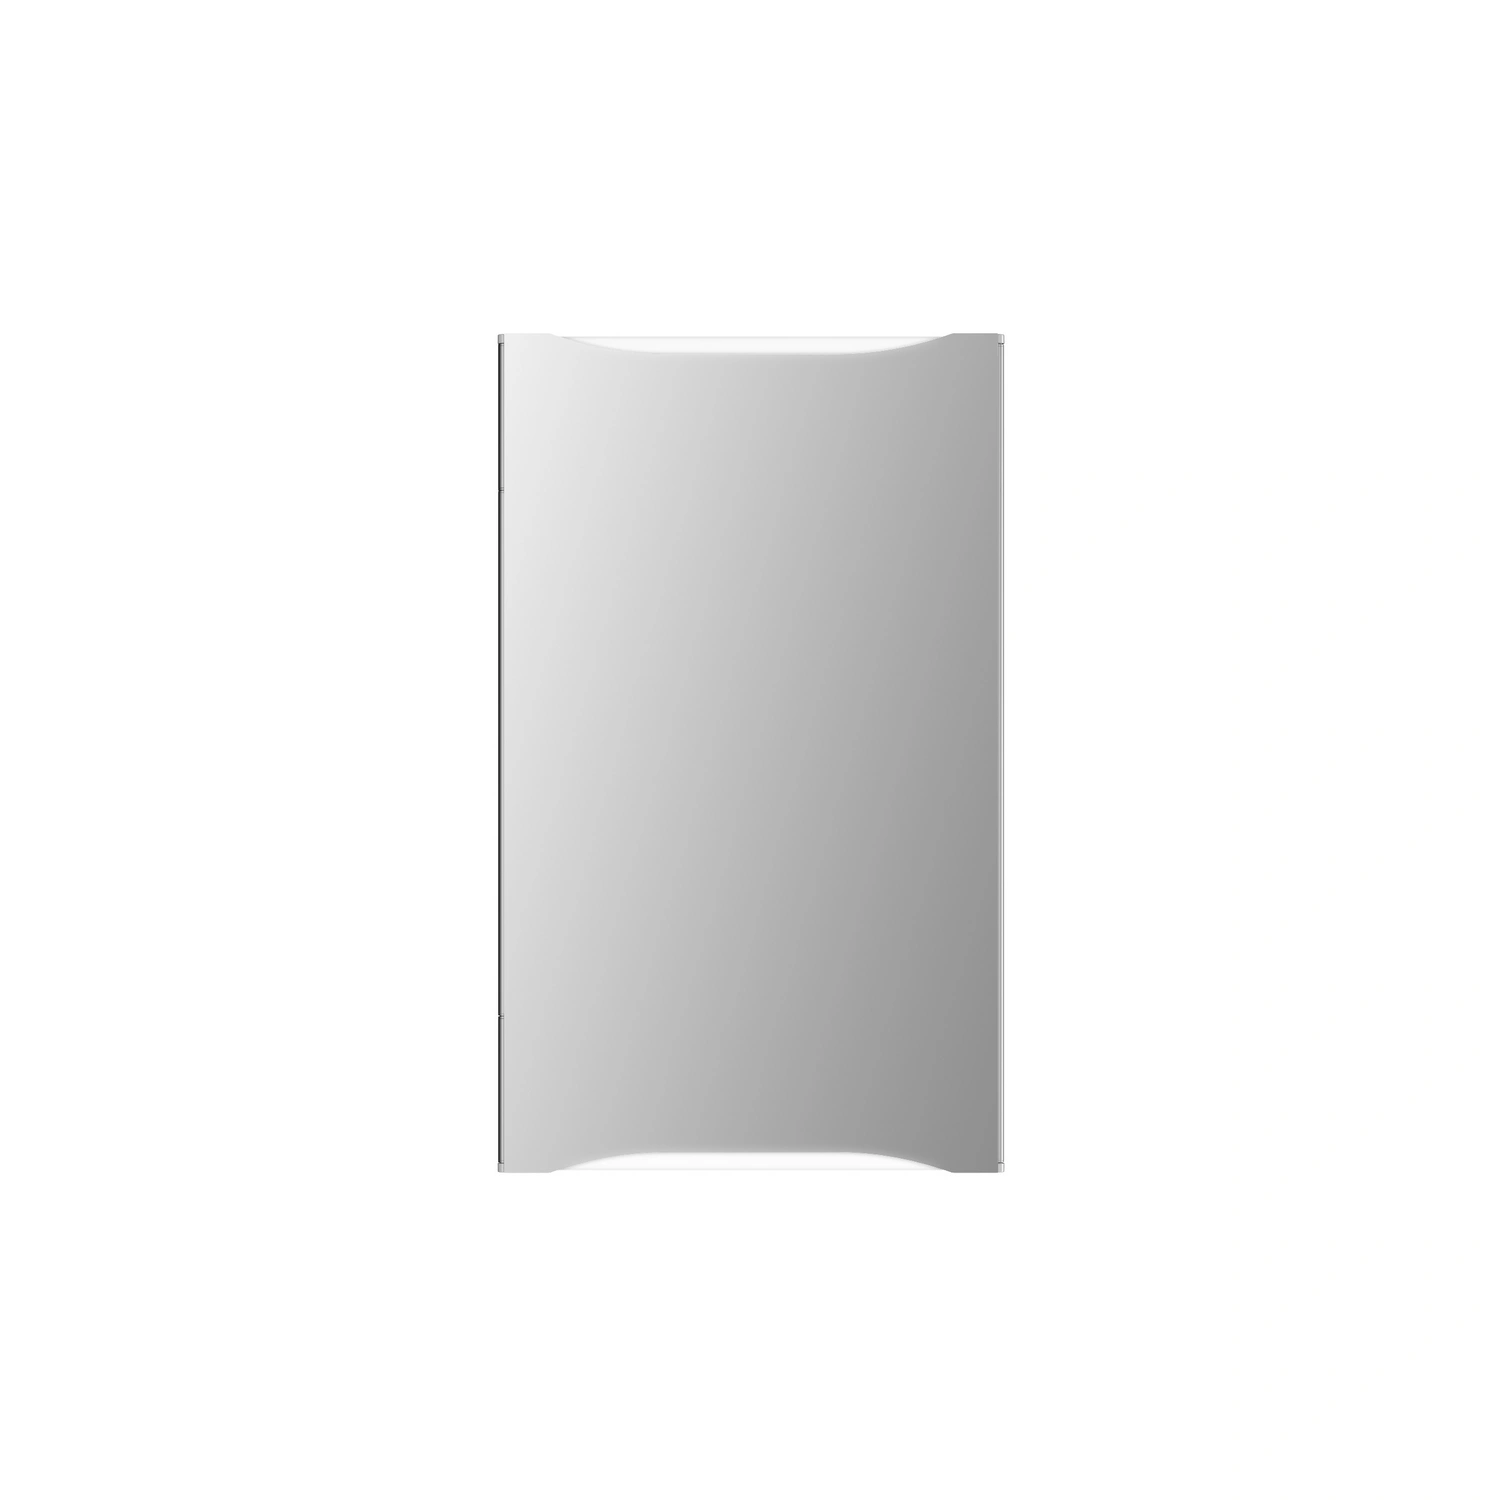 44,6 16,8 Spiegelschrank, BxHxT: transparent/weiß x 73,5 x cm, JOKEY